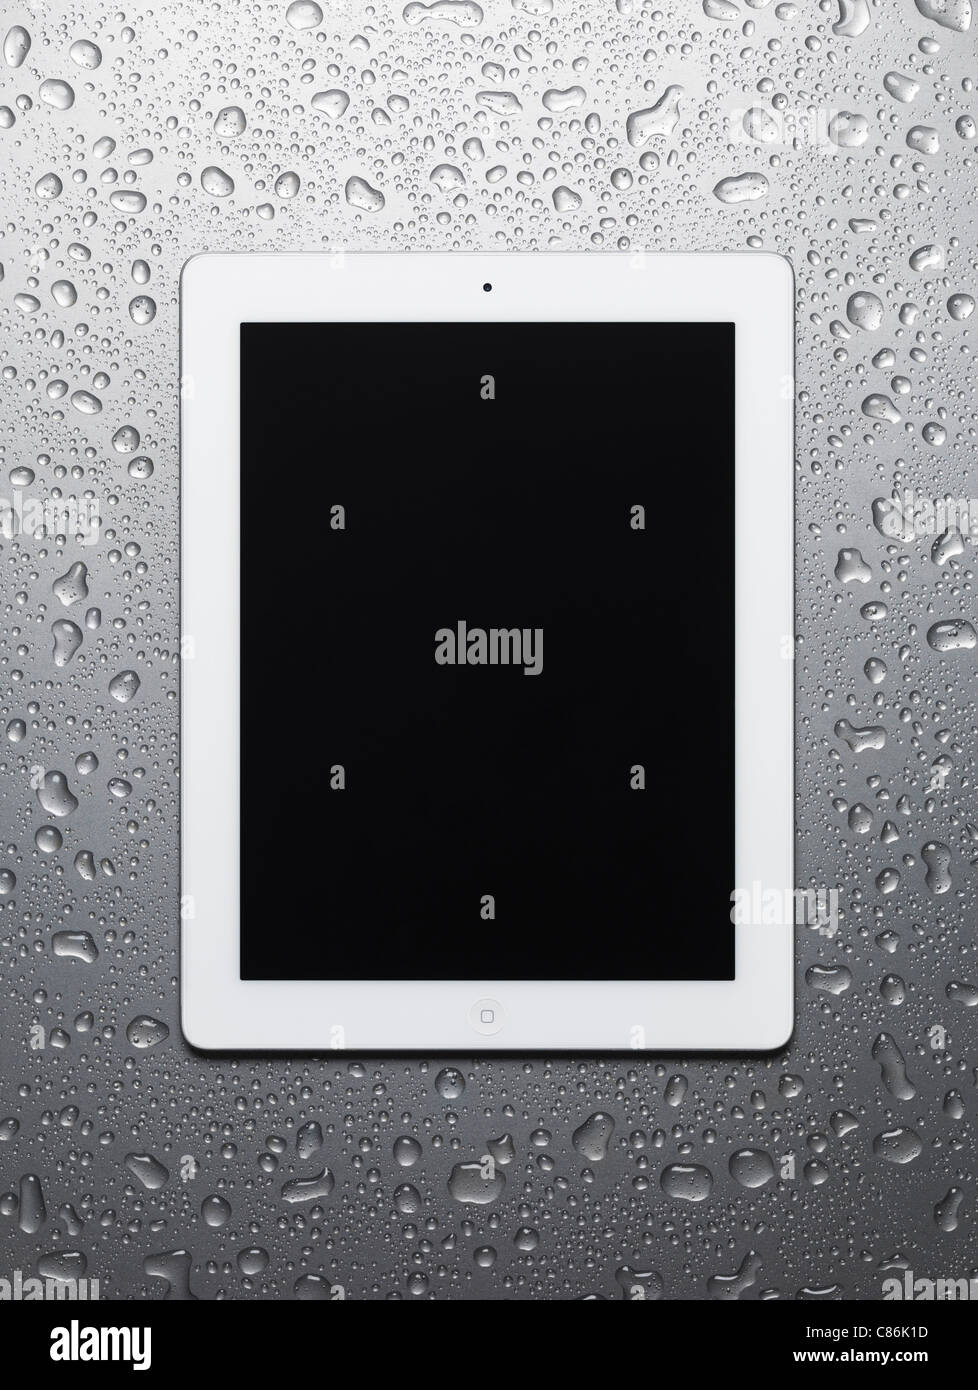 Tablette Apple iPad 2 blanc Ordinateur avec écran vide sur fond d'acier gris humide Banque D'Images